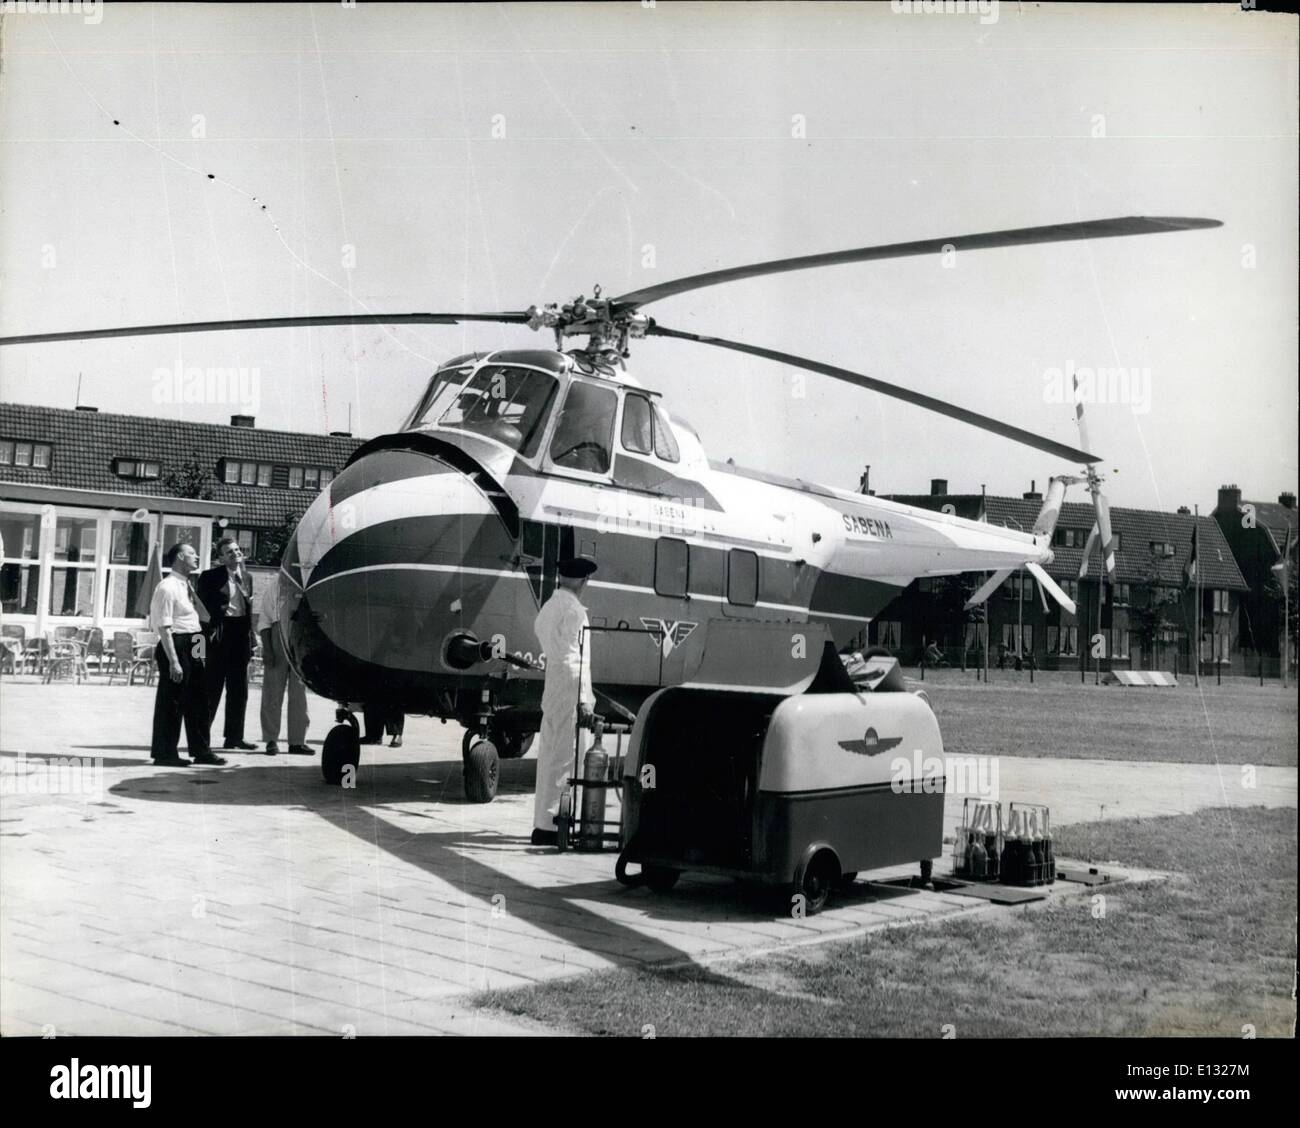 Febbraio 26, 2012 - EuropeÃ¢â'¬â"¢s servizio elicottero in azione: Halt per il rifornimento di carburante a Maastricht Ã¢â'¬â€oe i passeggeri che viaggiano su Foto Stock